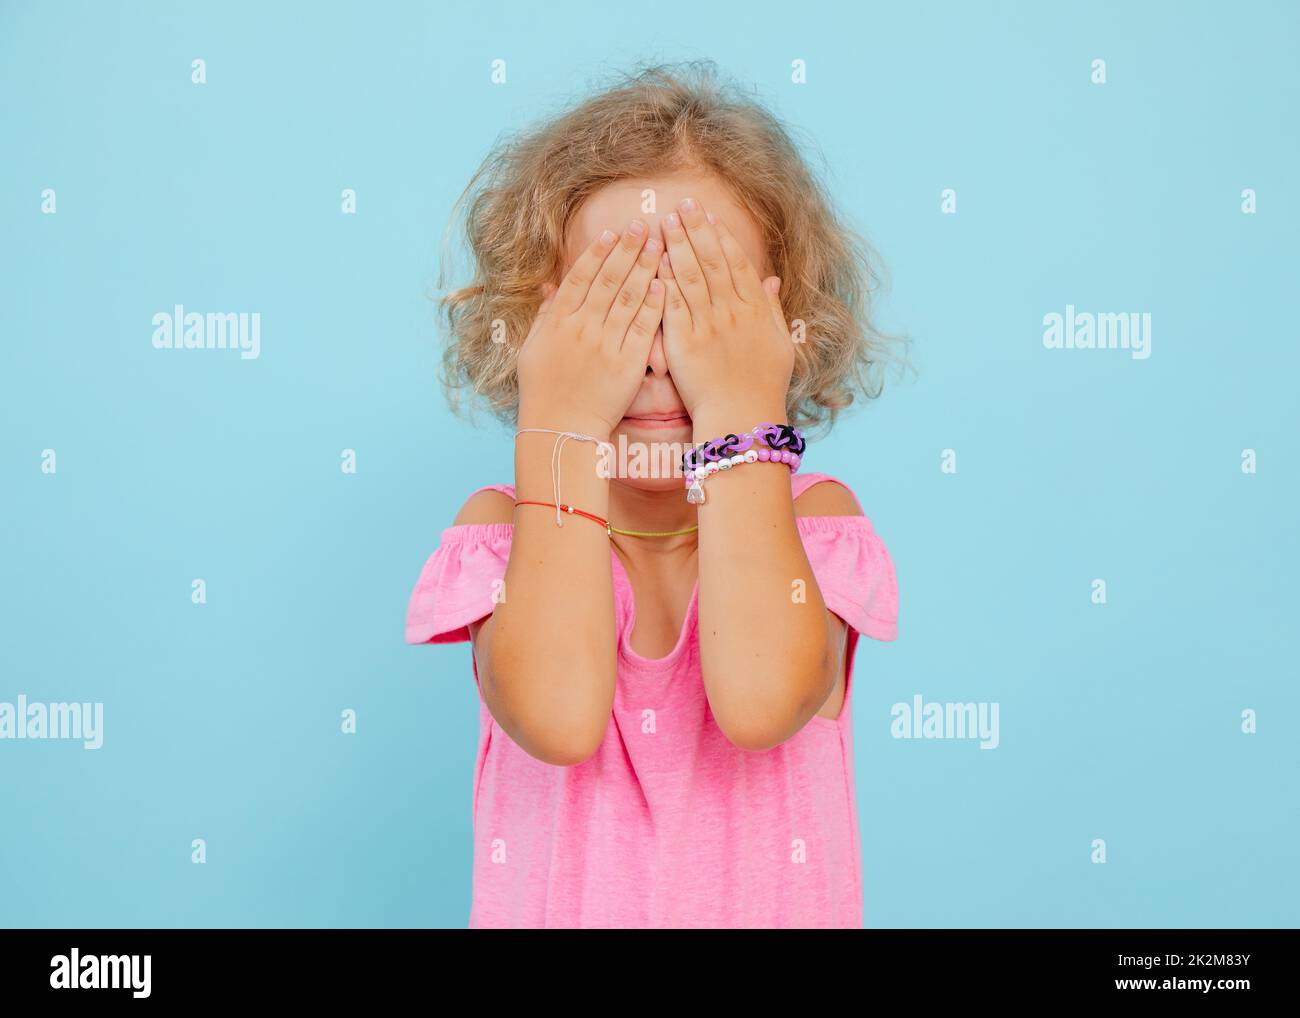 Portrait de la petite fille effrayée bouleversée couvrant les yeux avec les mains se cachant le visage sur fond bleu. Émotions, craintes, studio. Banque D'Images